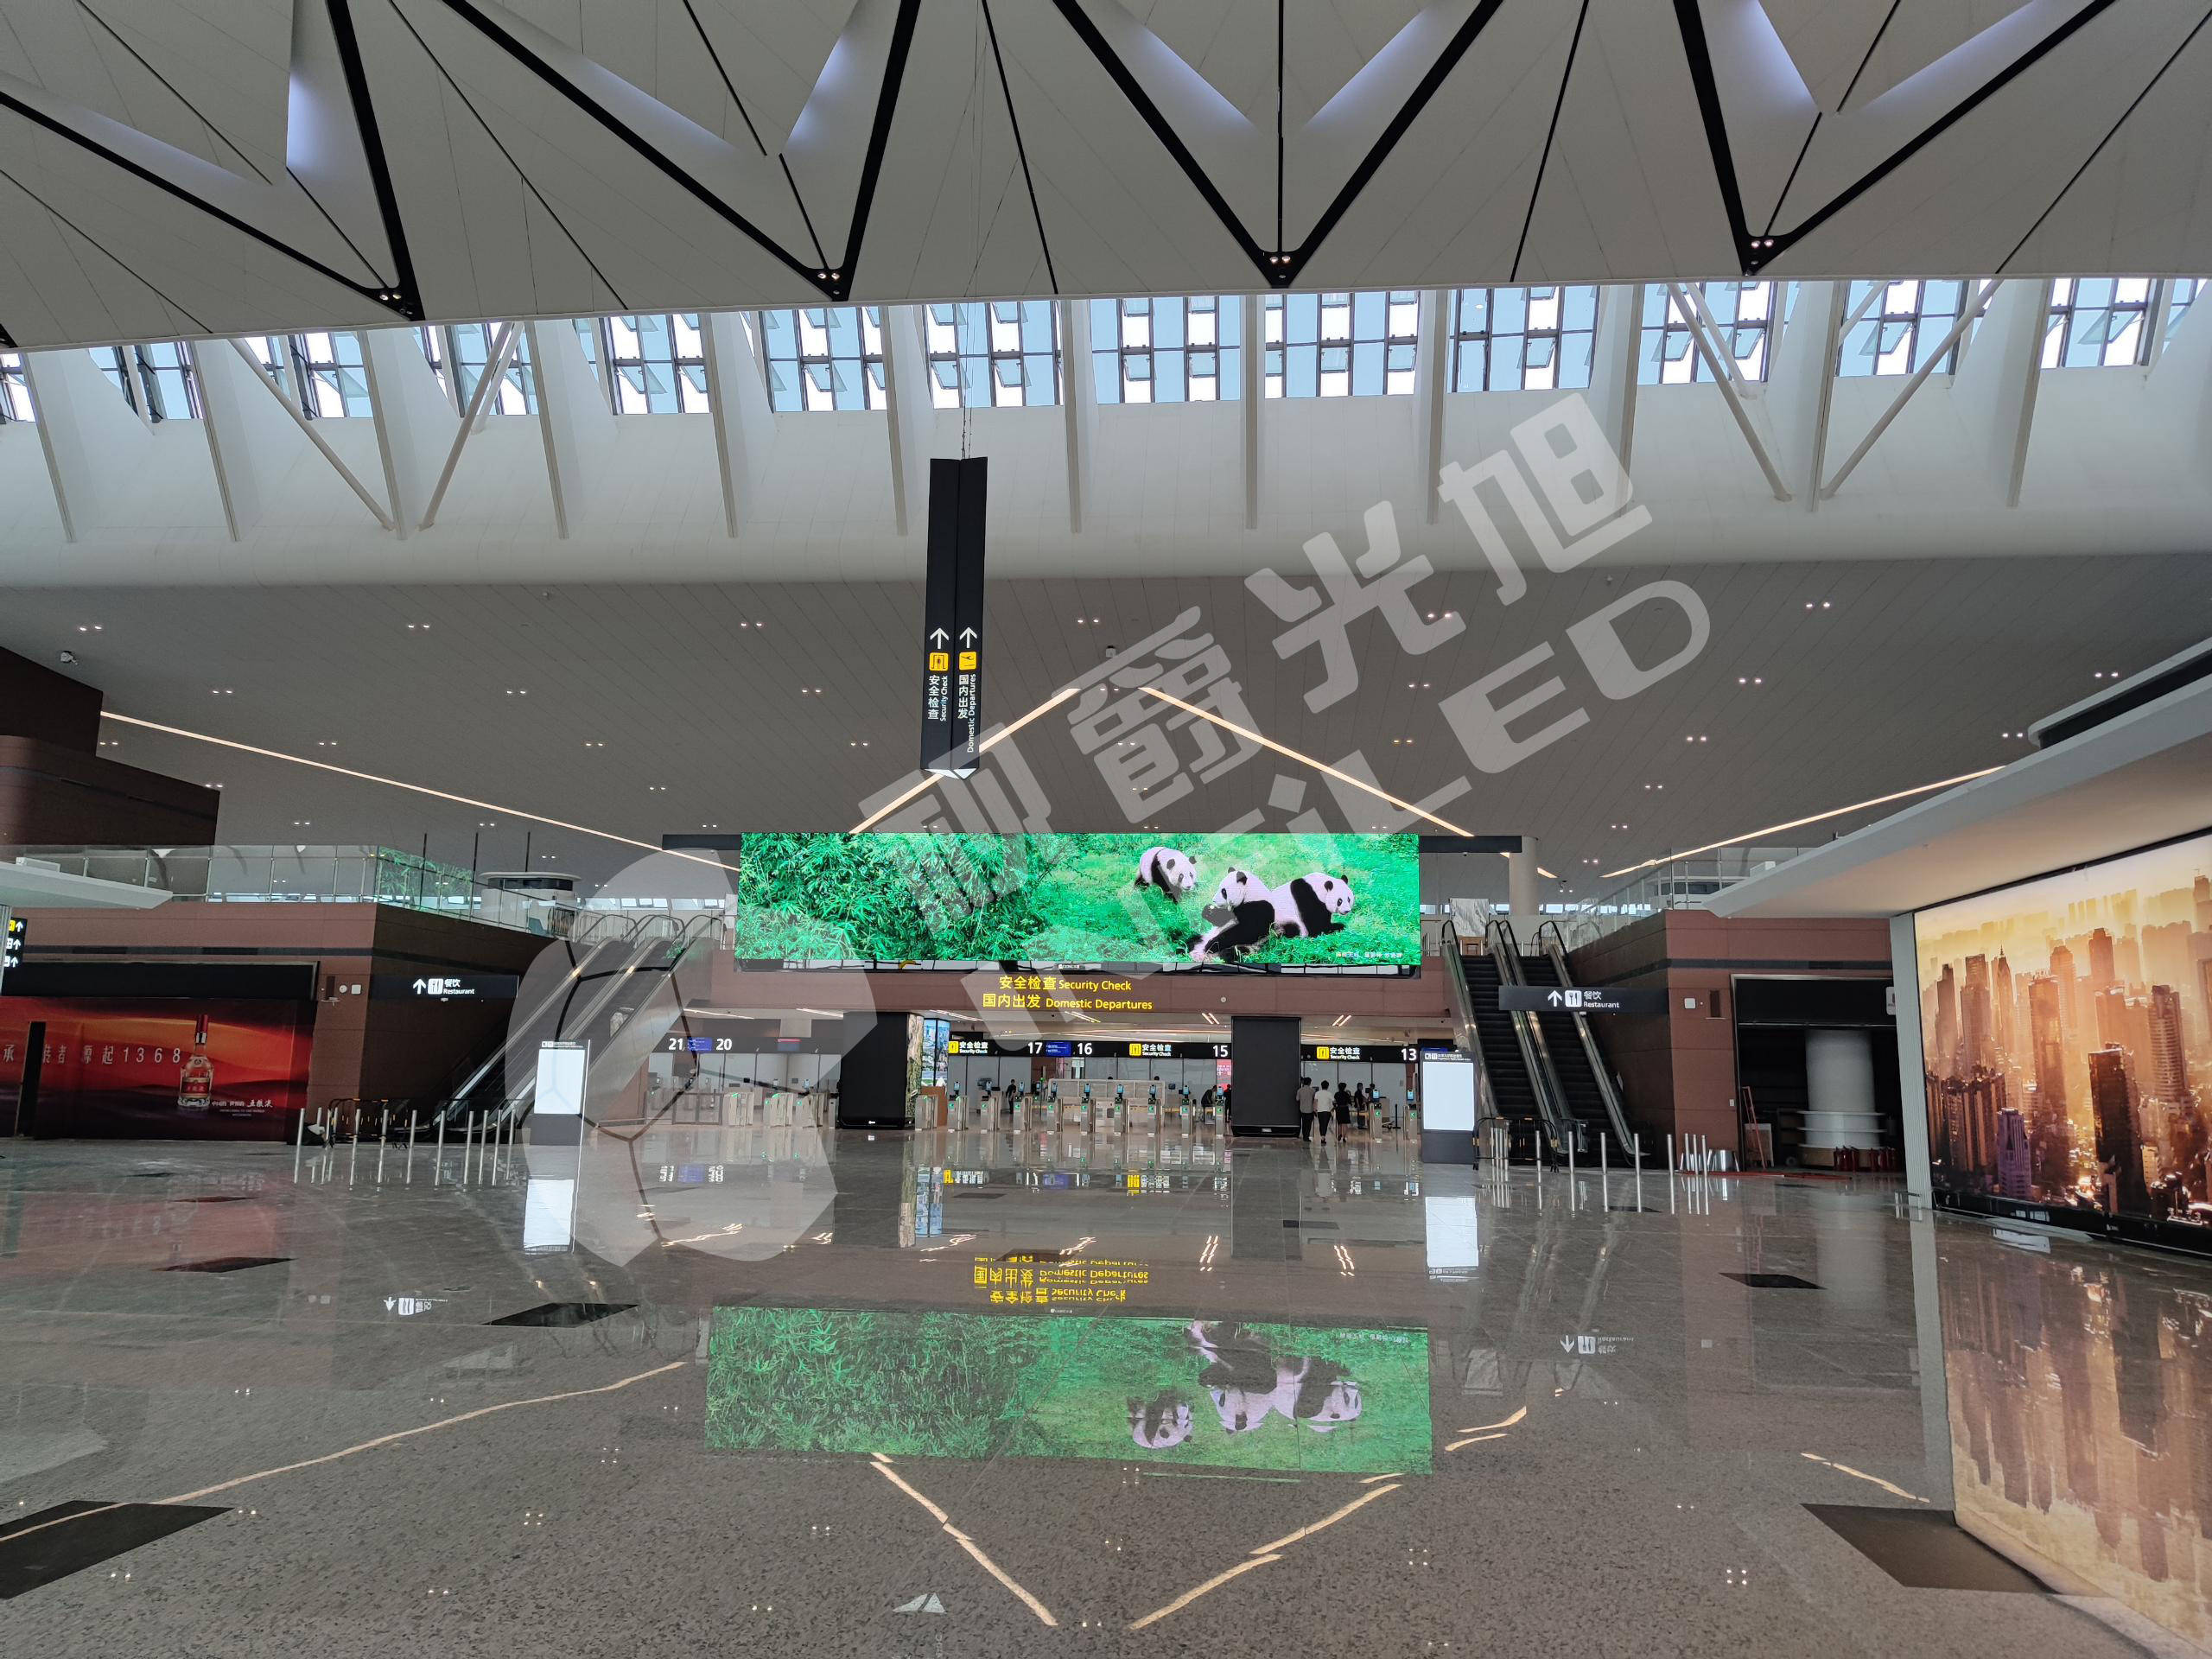 原创视爵光旭led显示屏助力打造成都天府国际机场led显示屏机场案例